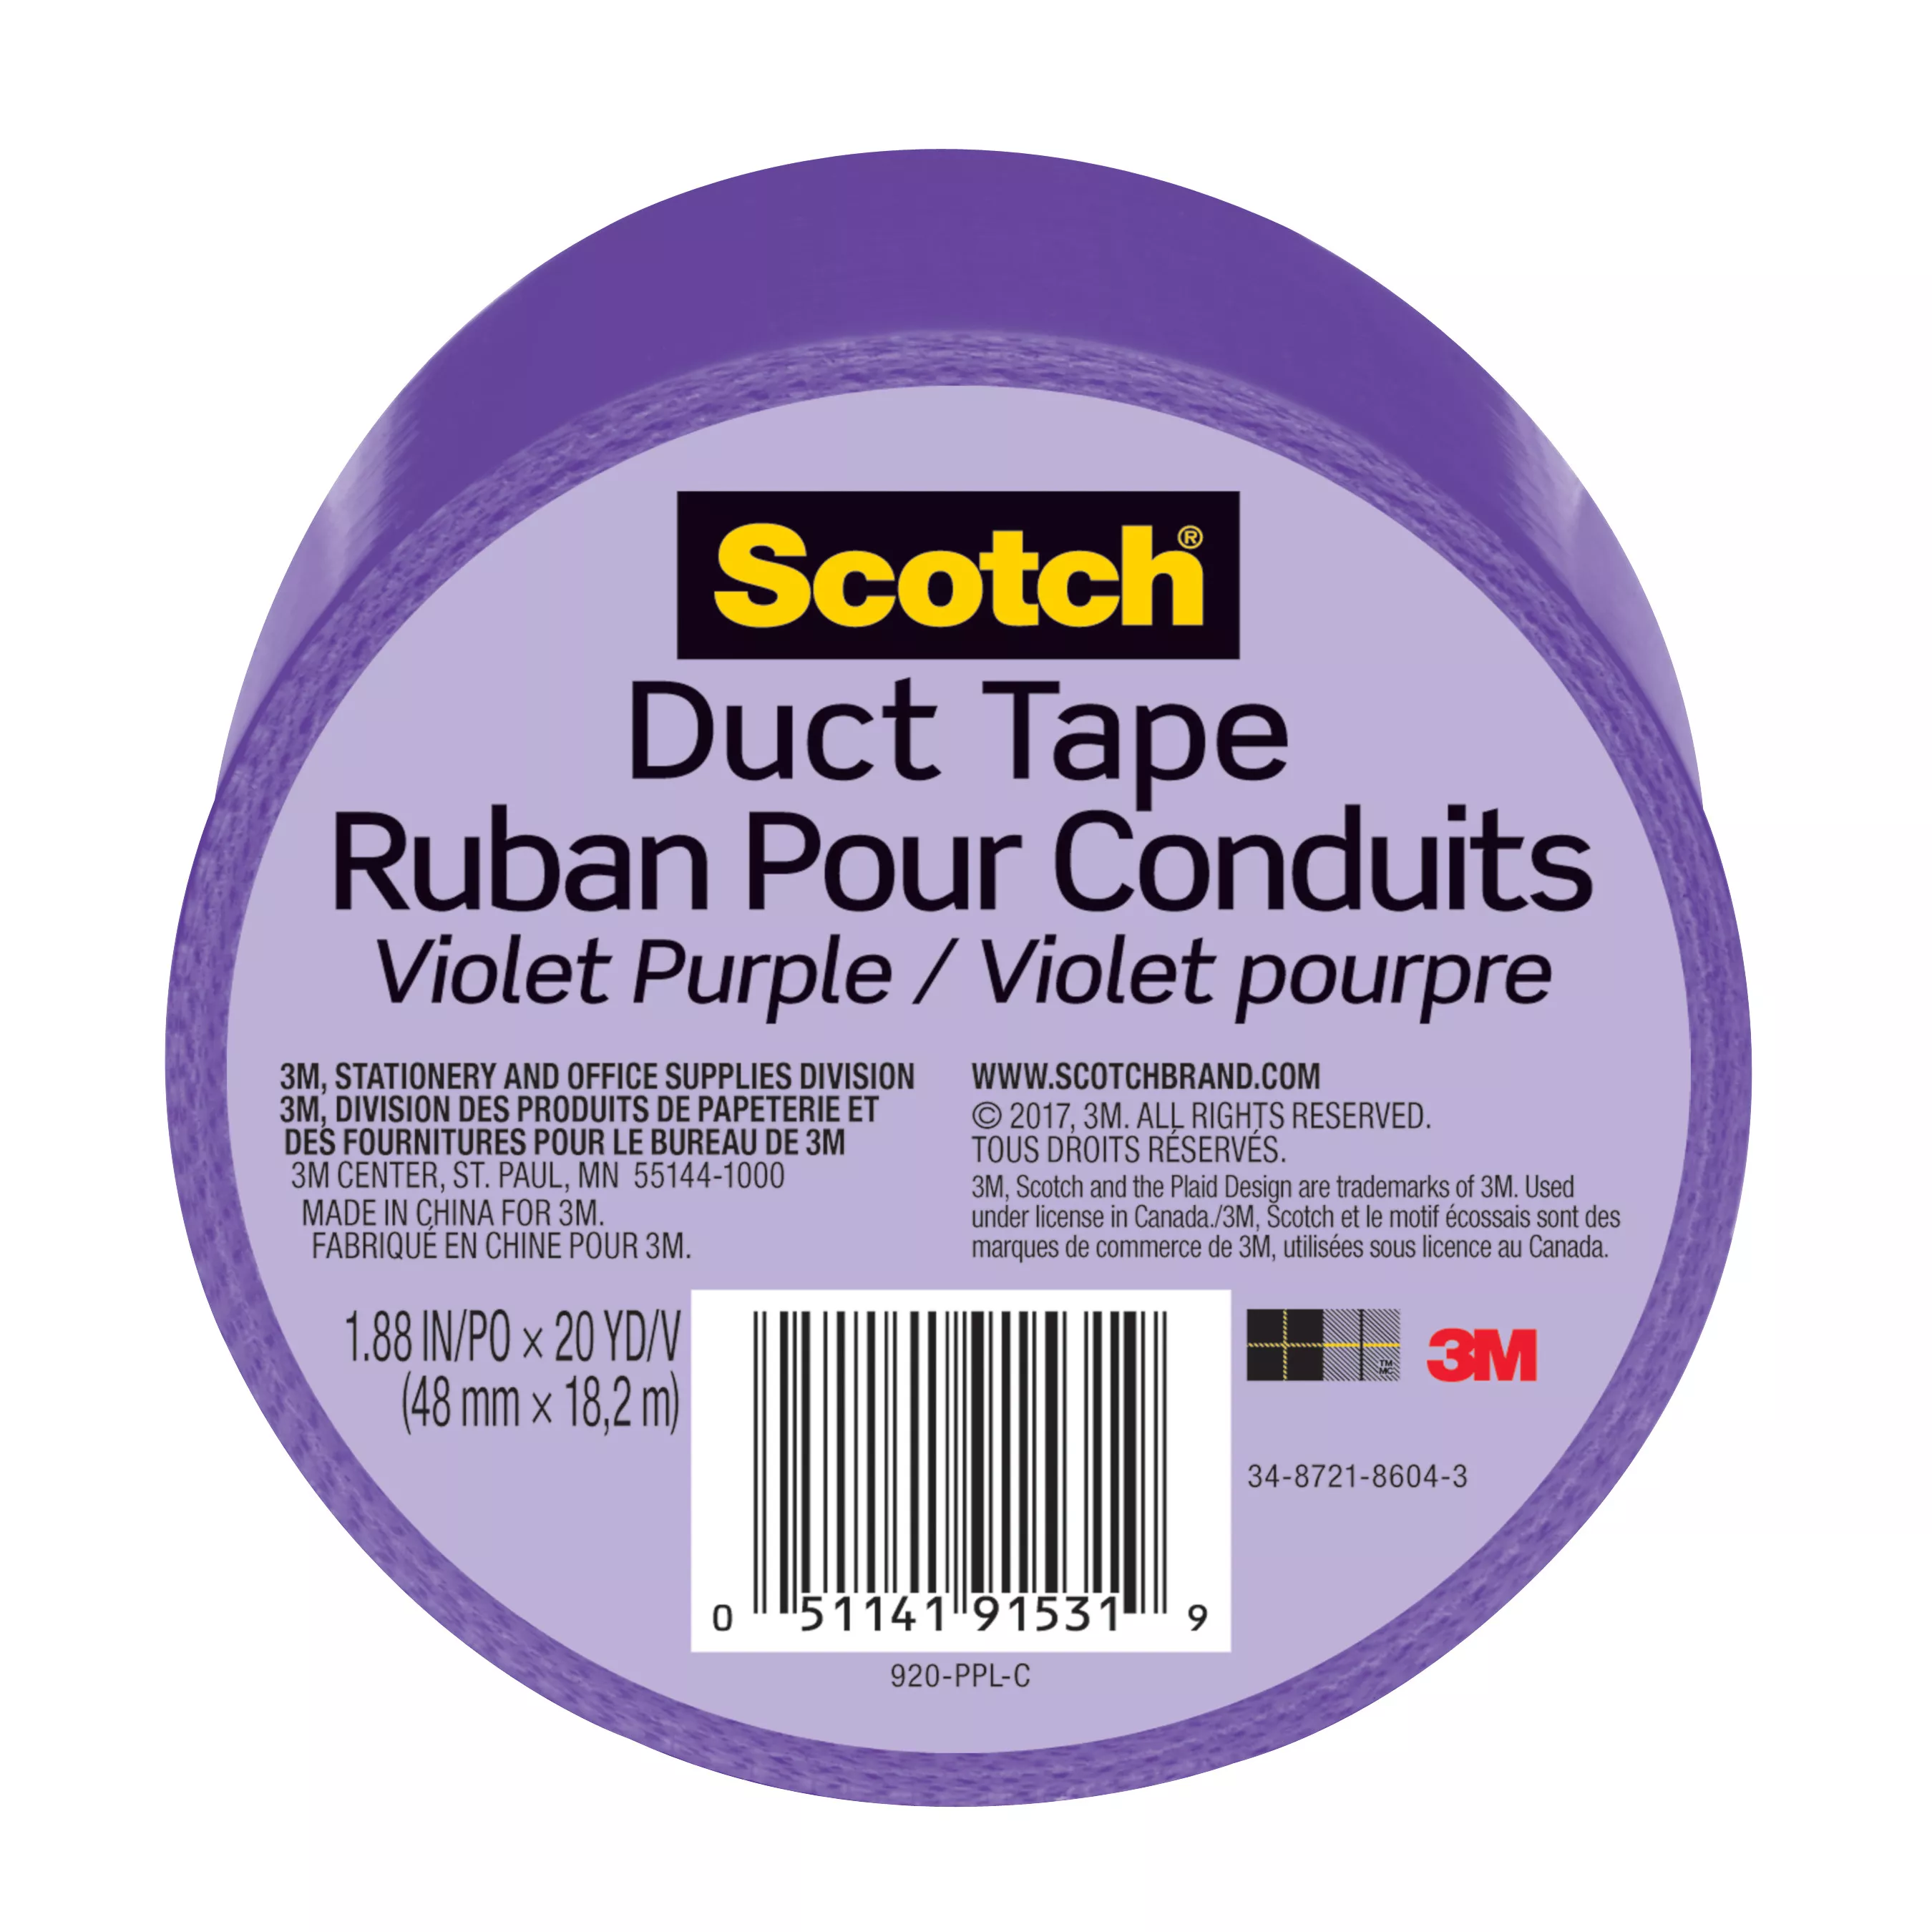 Scotch® Duct Tape 920-PPL-C, 1.88 in x 20 yd (48 mm x 18,2 m), Purple